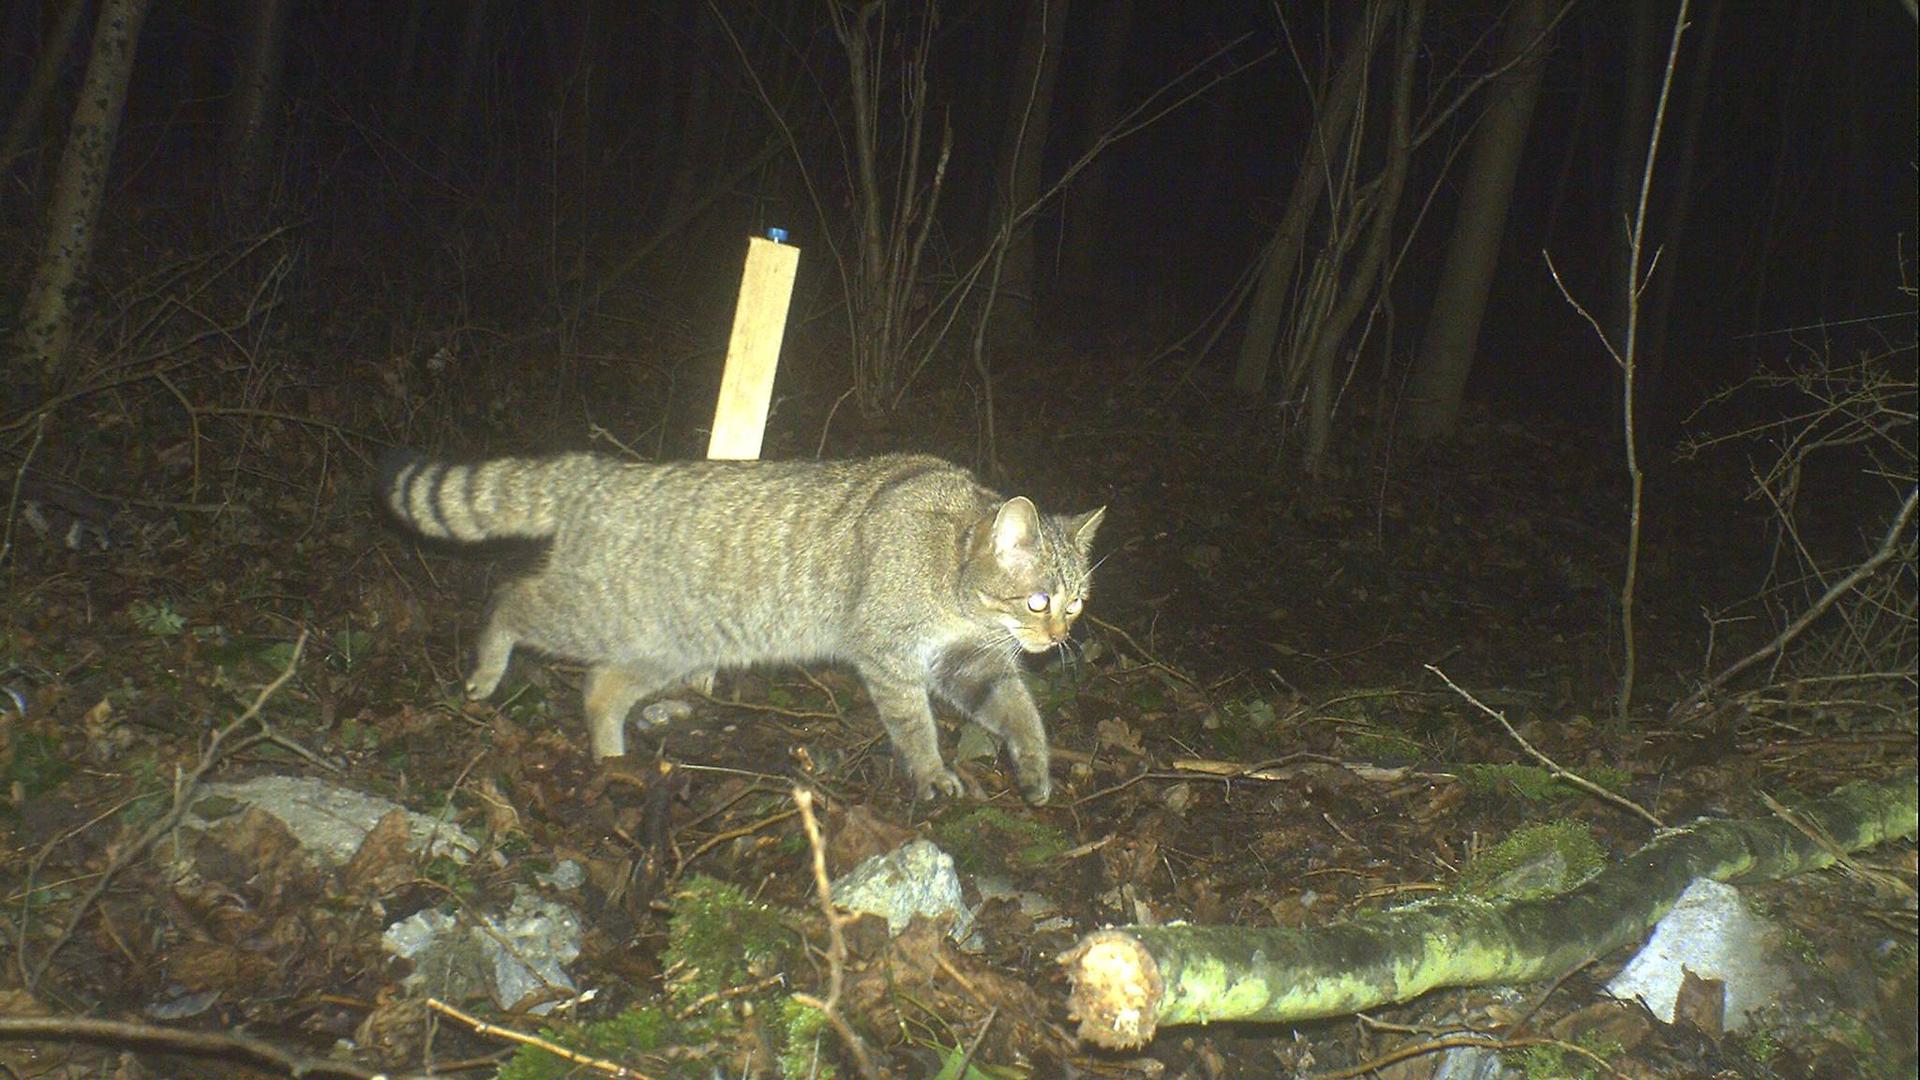 Dafür sind Wildtierkameras gemacht – um Waldbewohner in ihrer natürlichen Umgebung aufzunehmen. Hier hat sich eine Wildkatze ins Bild geschlichen.